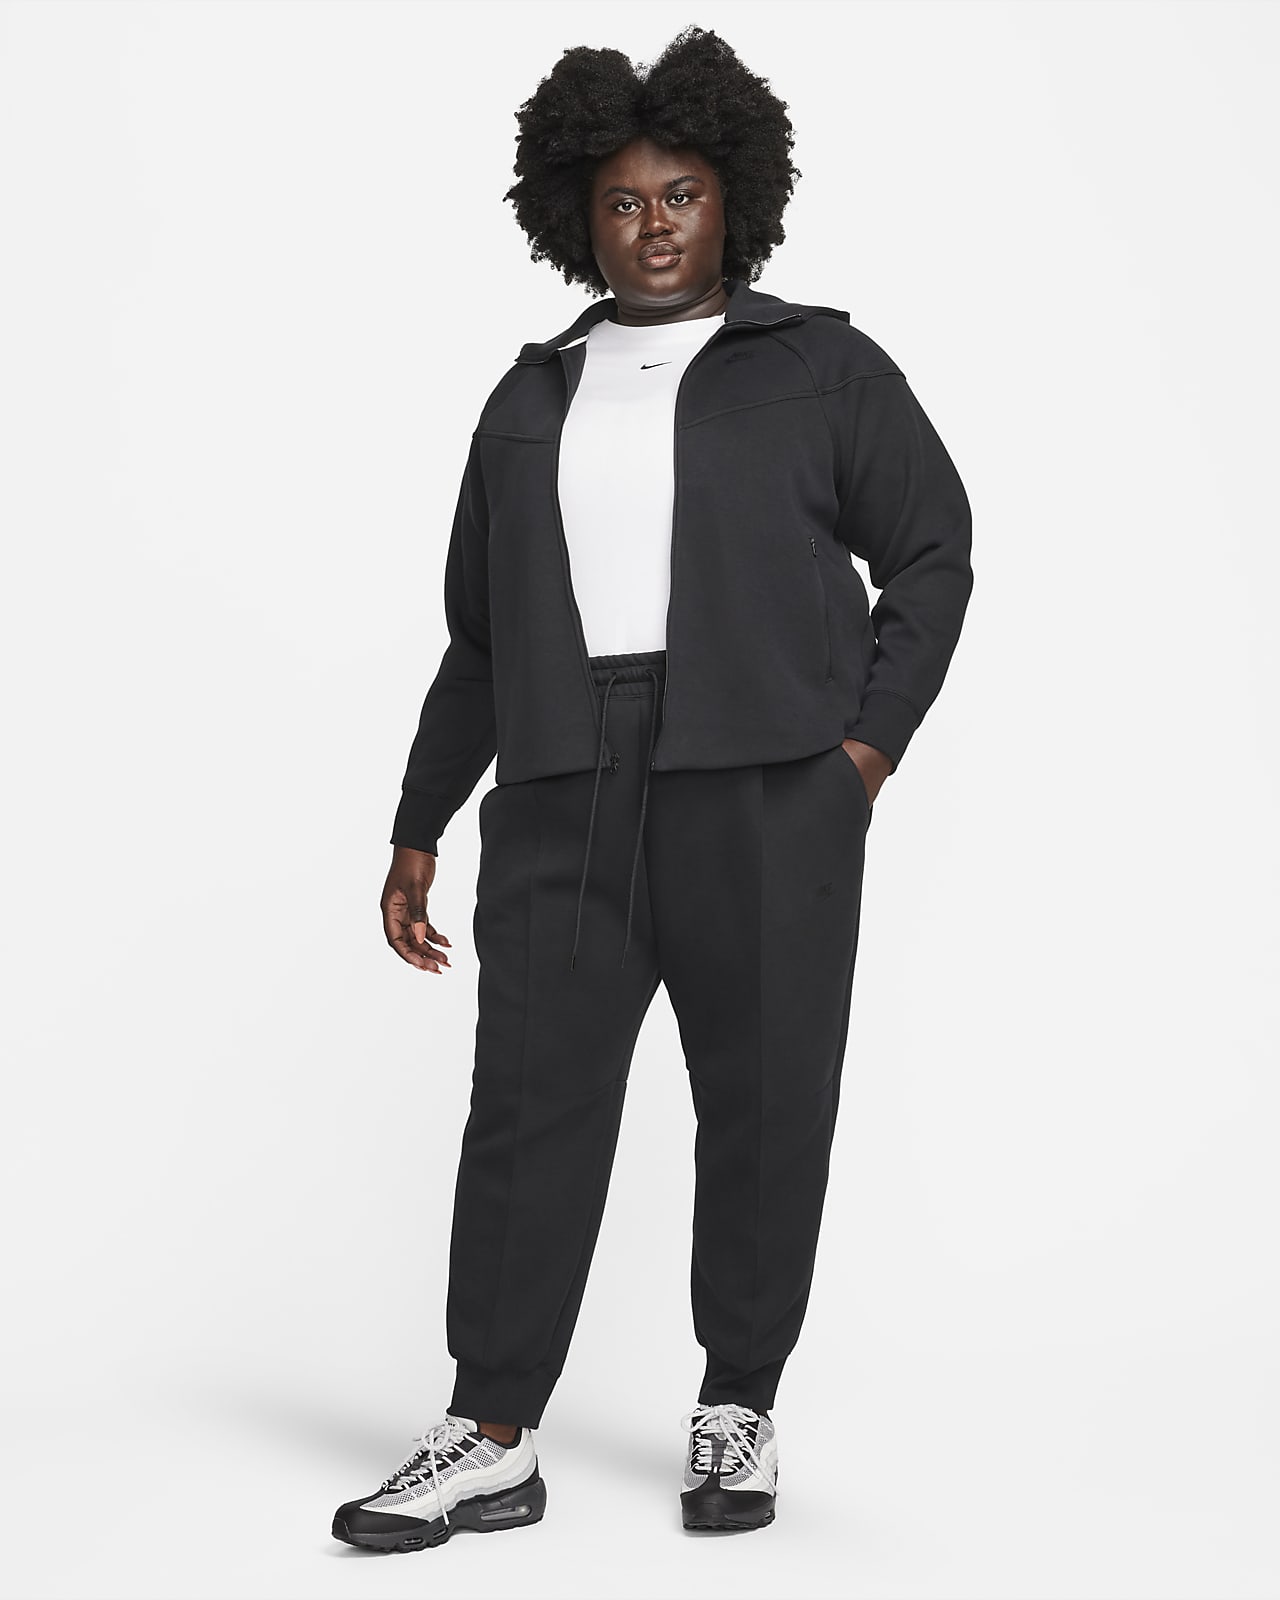 Nike Sportswear Tech Fleece Women's Mid-Rise Joggers (Plus Size